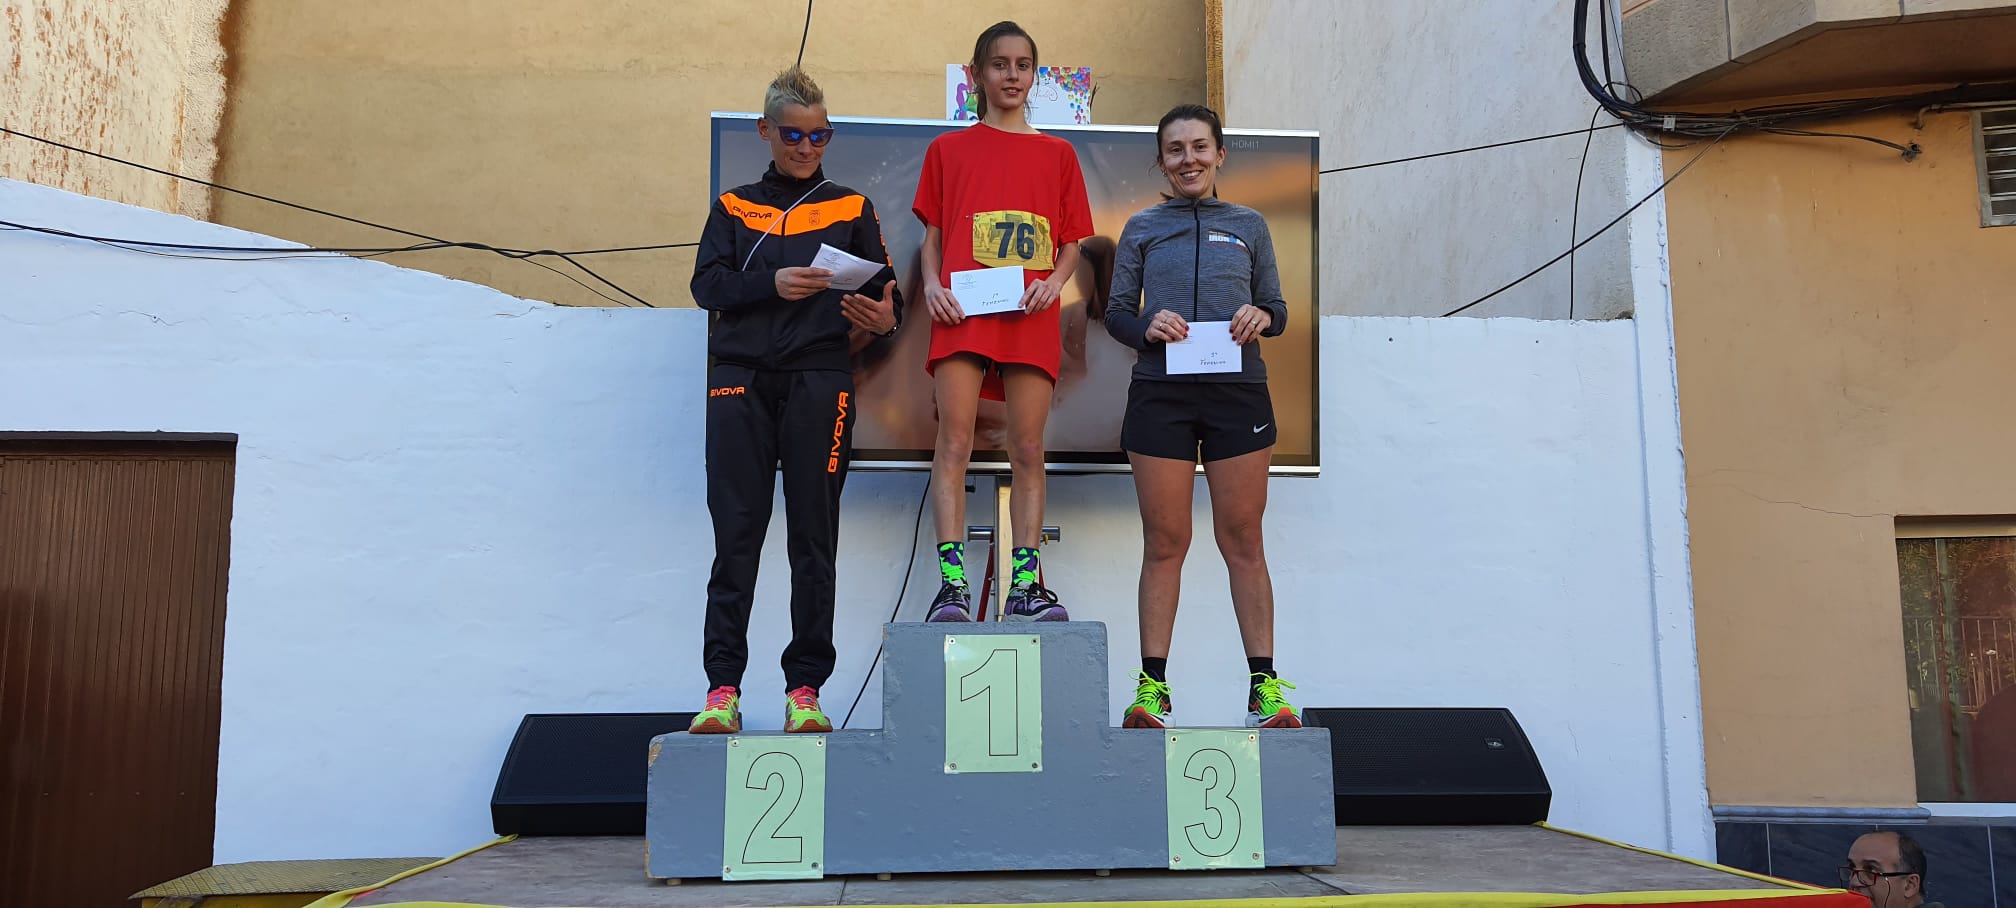 Ganadores de la categoría femenina en Andorra / Ayto. Andorra